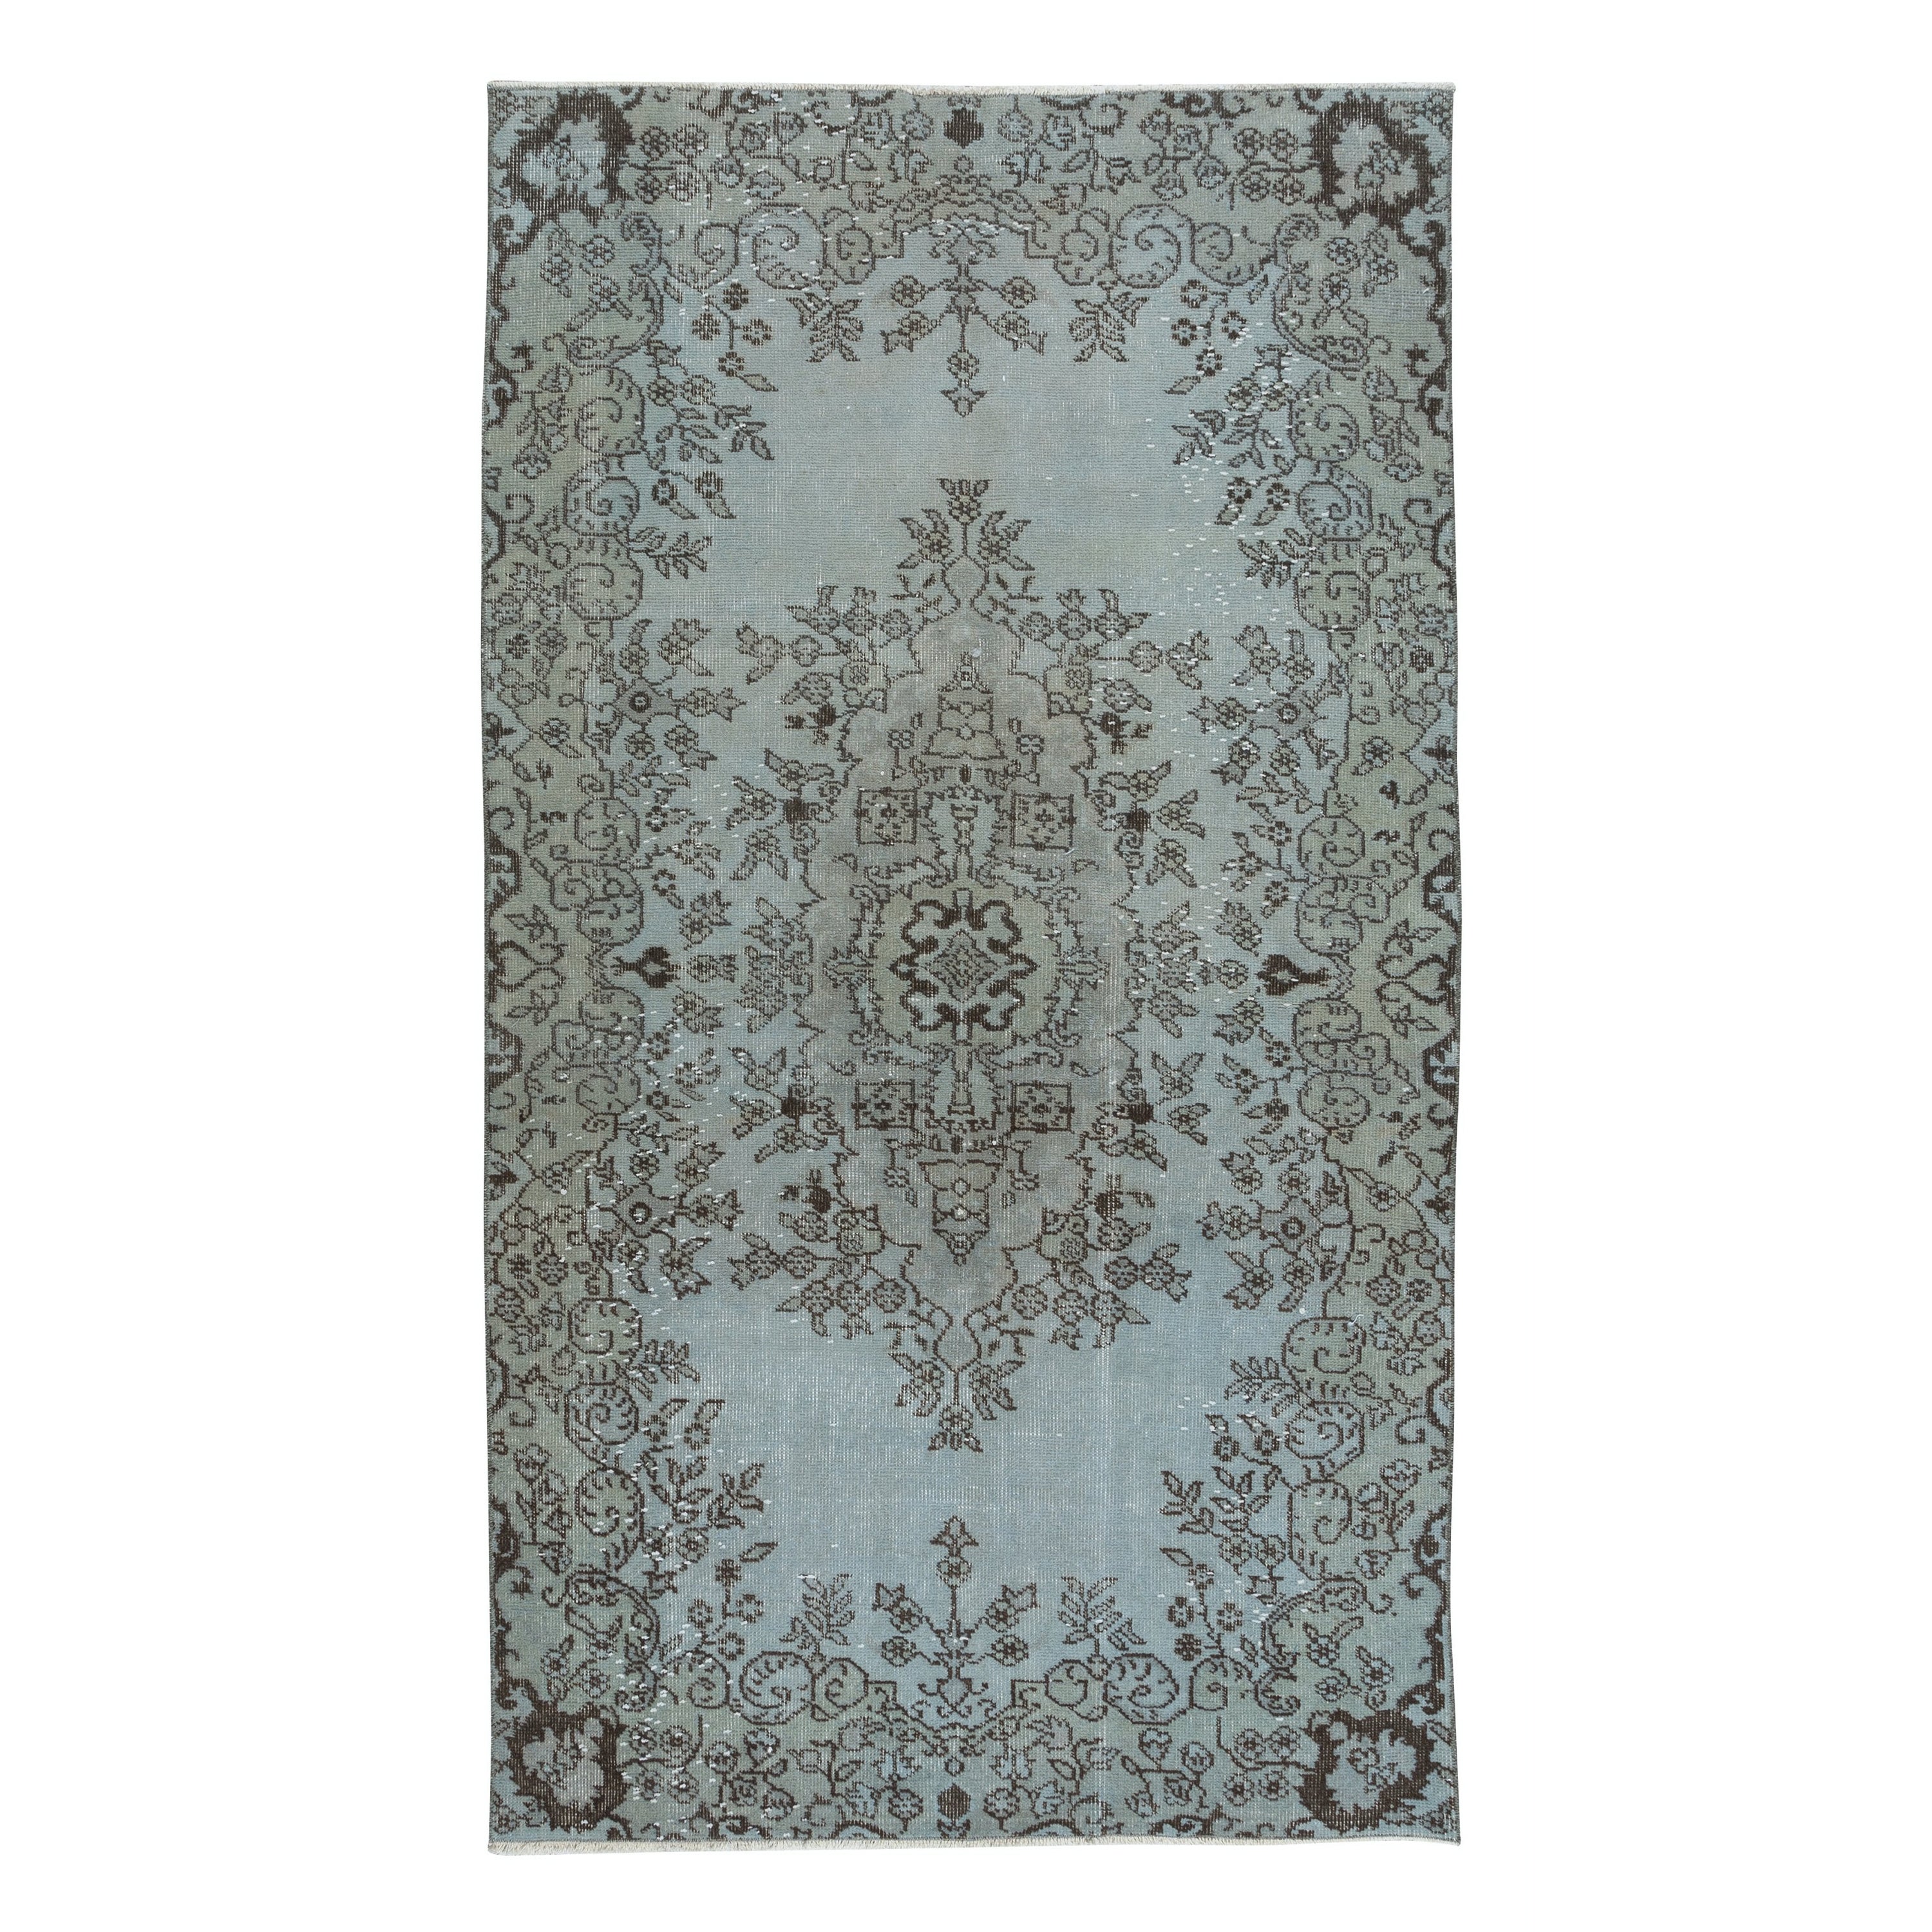 4x7 Ft Türkischer handgefertigter Teppich mit Blumenakzent in Himmelblau, großformatig, 4 moderne Inneneinrichtungen